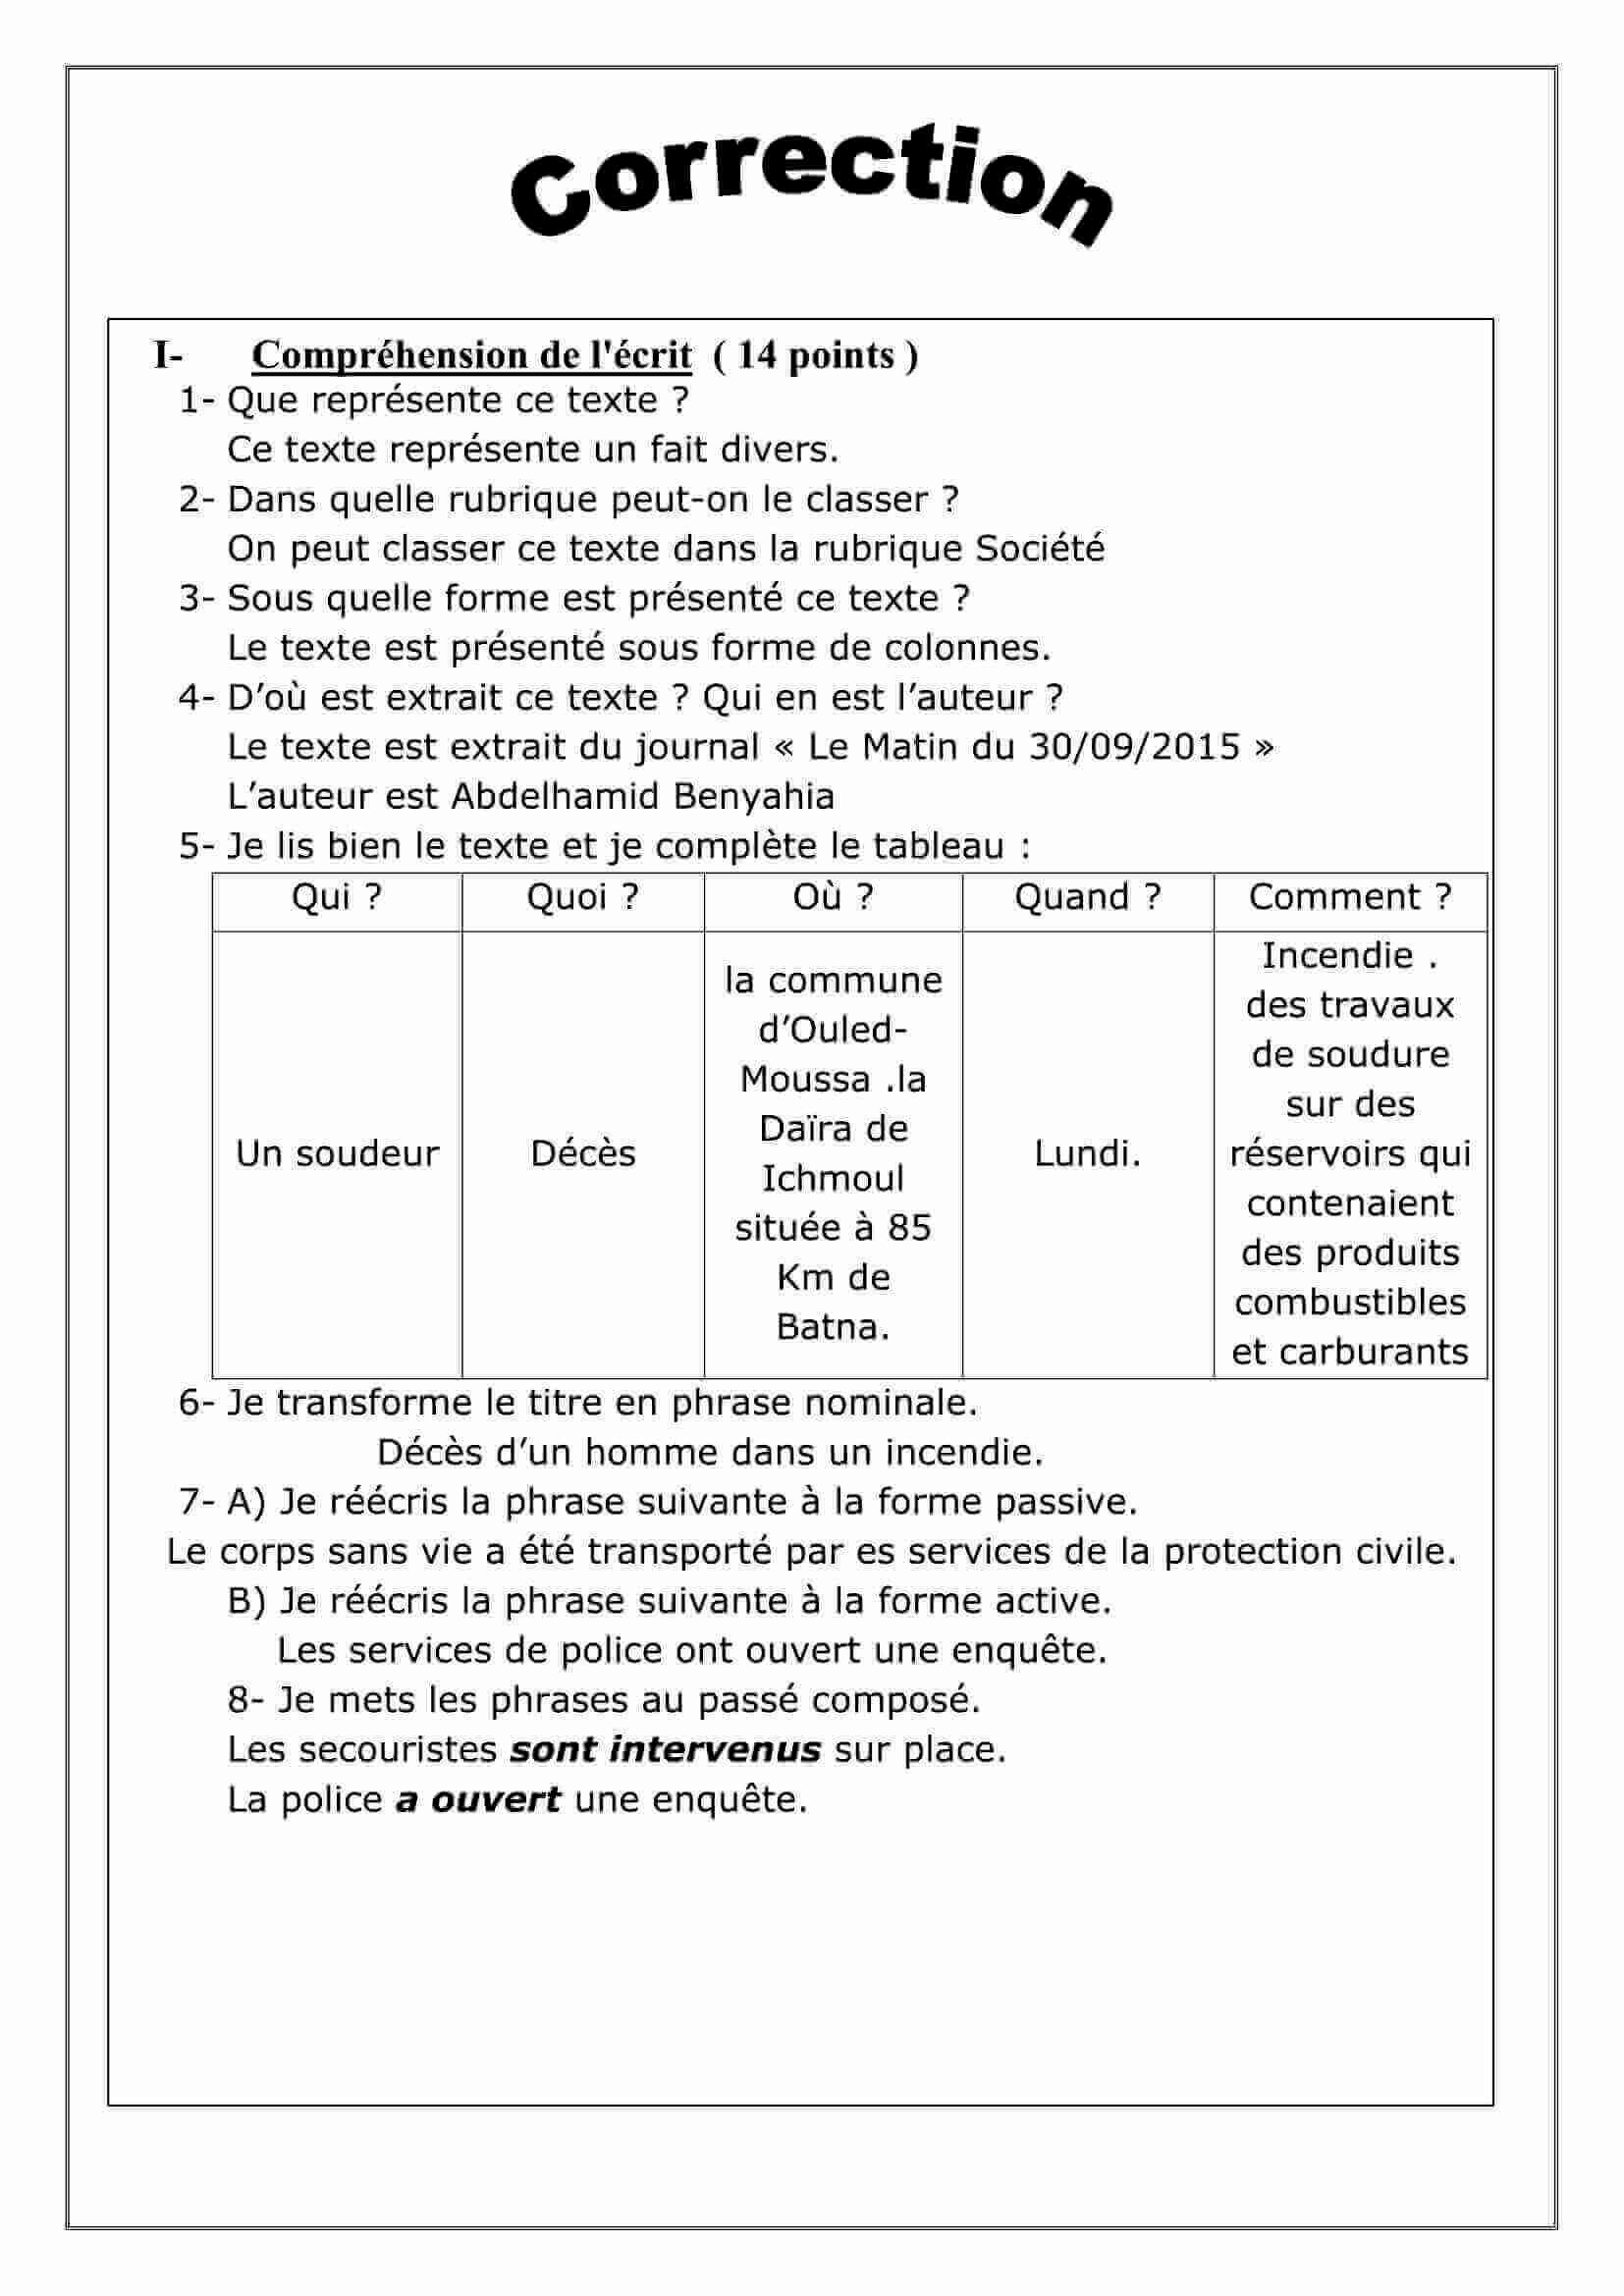 اختبار الفصل الأول في اللغة الفرنسية للسنة 3 متوسط النموذج 22